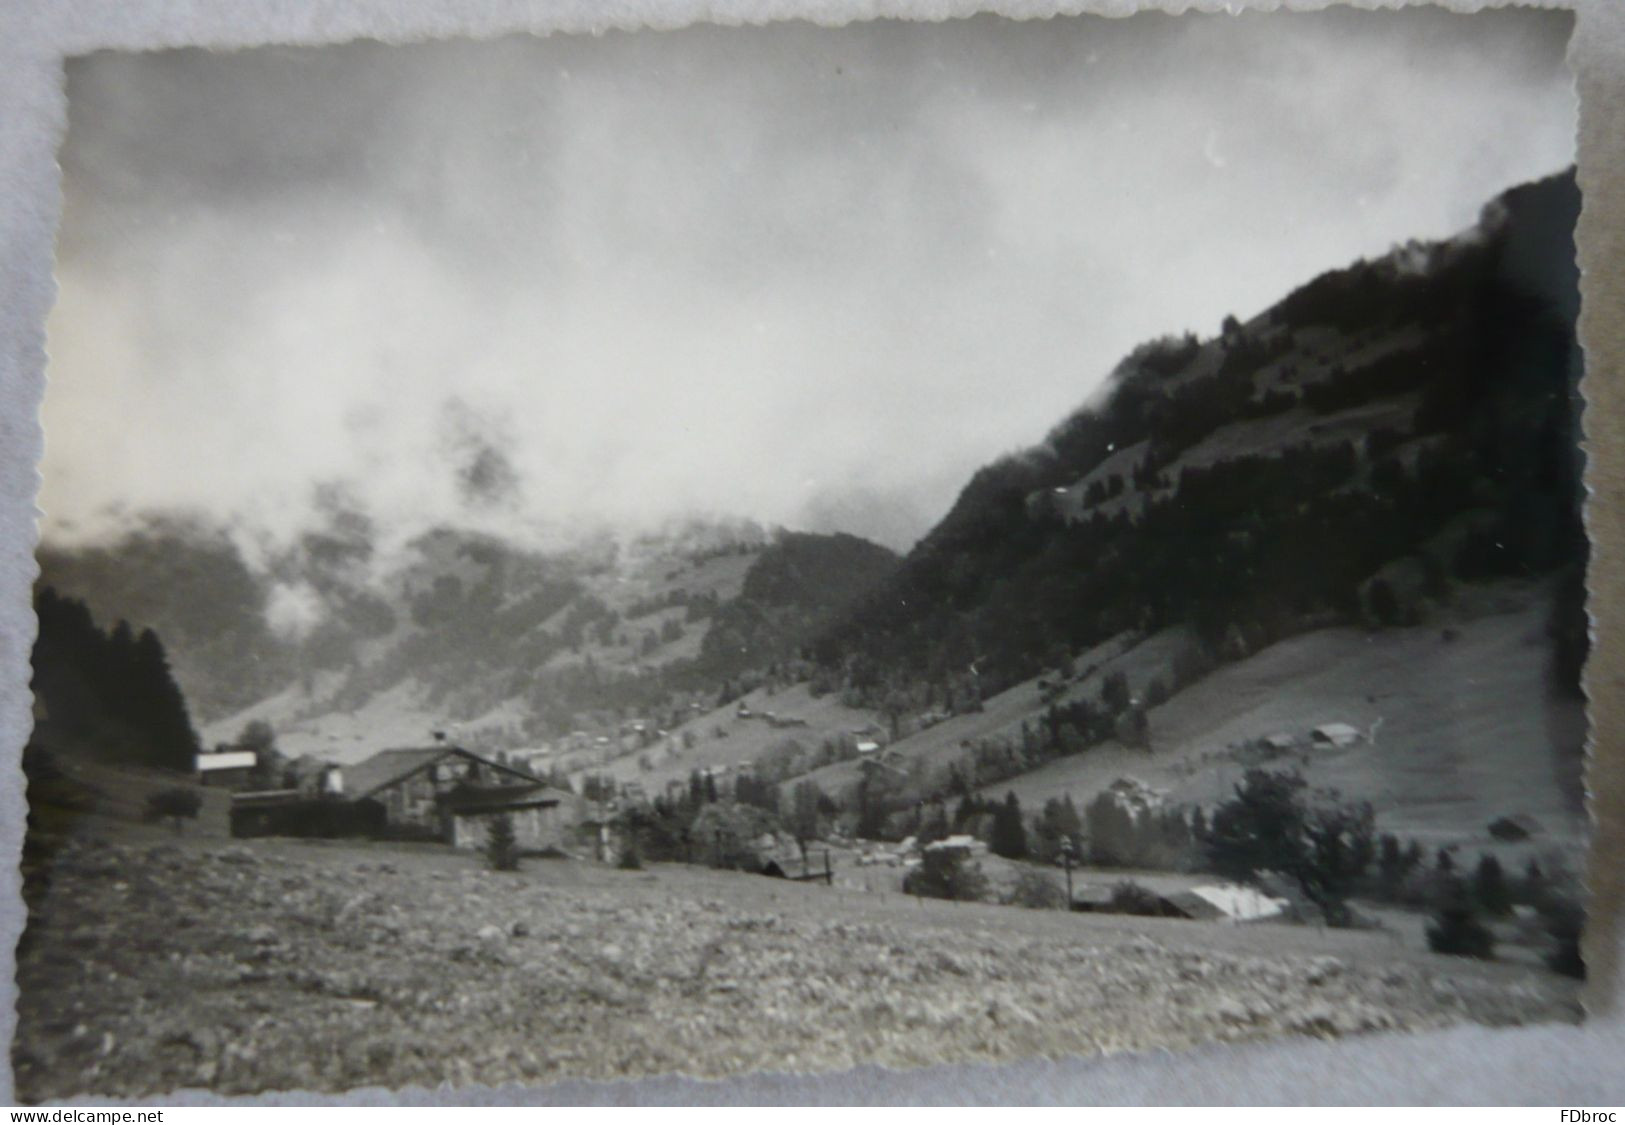 lot de 6 anciennes photos Suisse CH - FR Fribourg - Vues du village de Gruyère - Intérieur et alentours 13 x 8 cm